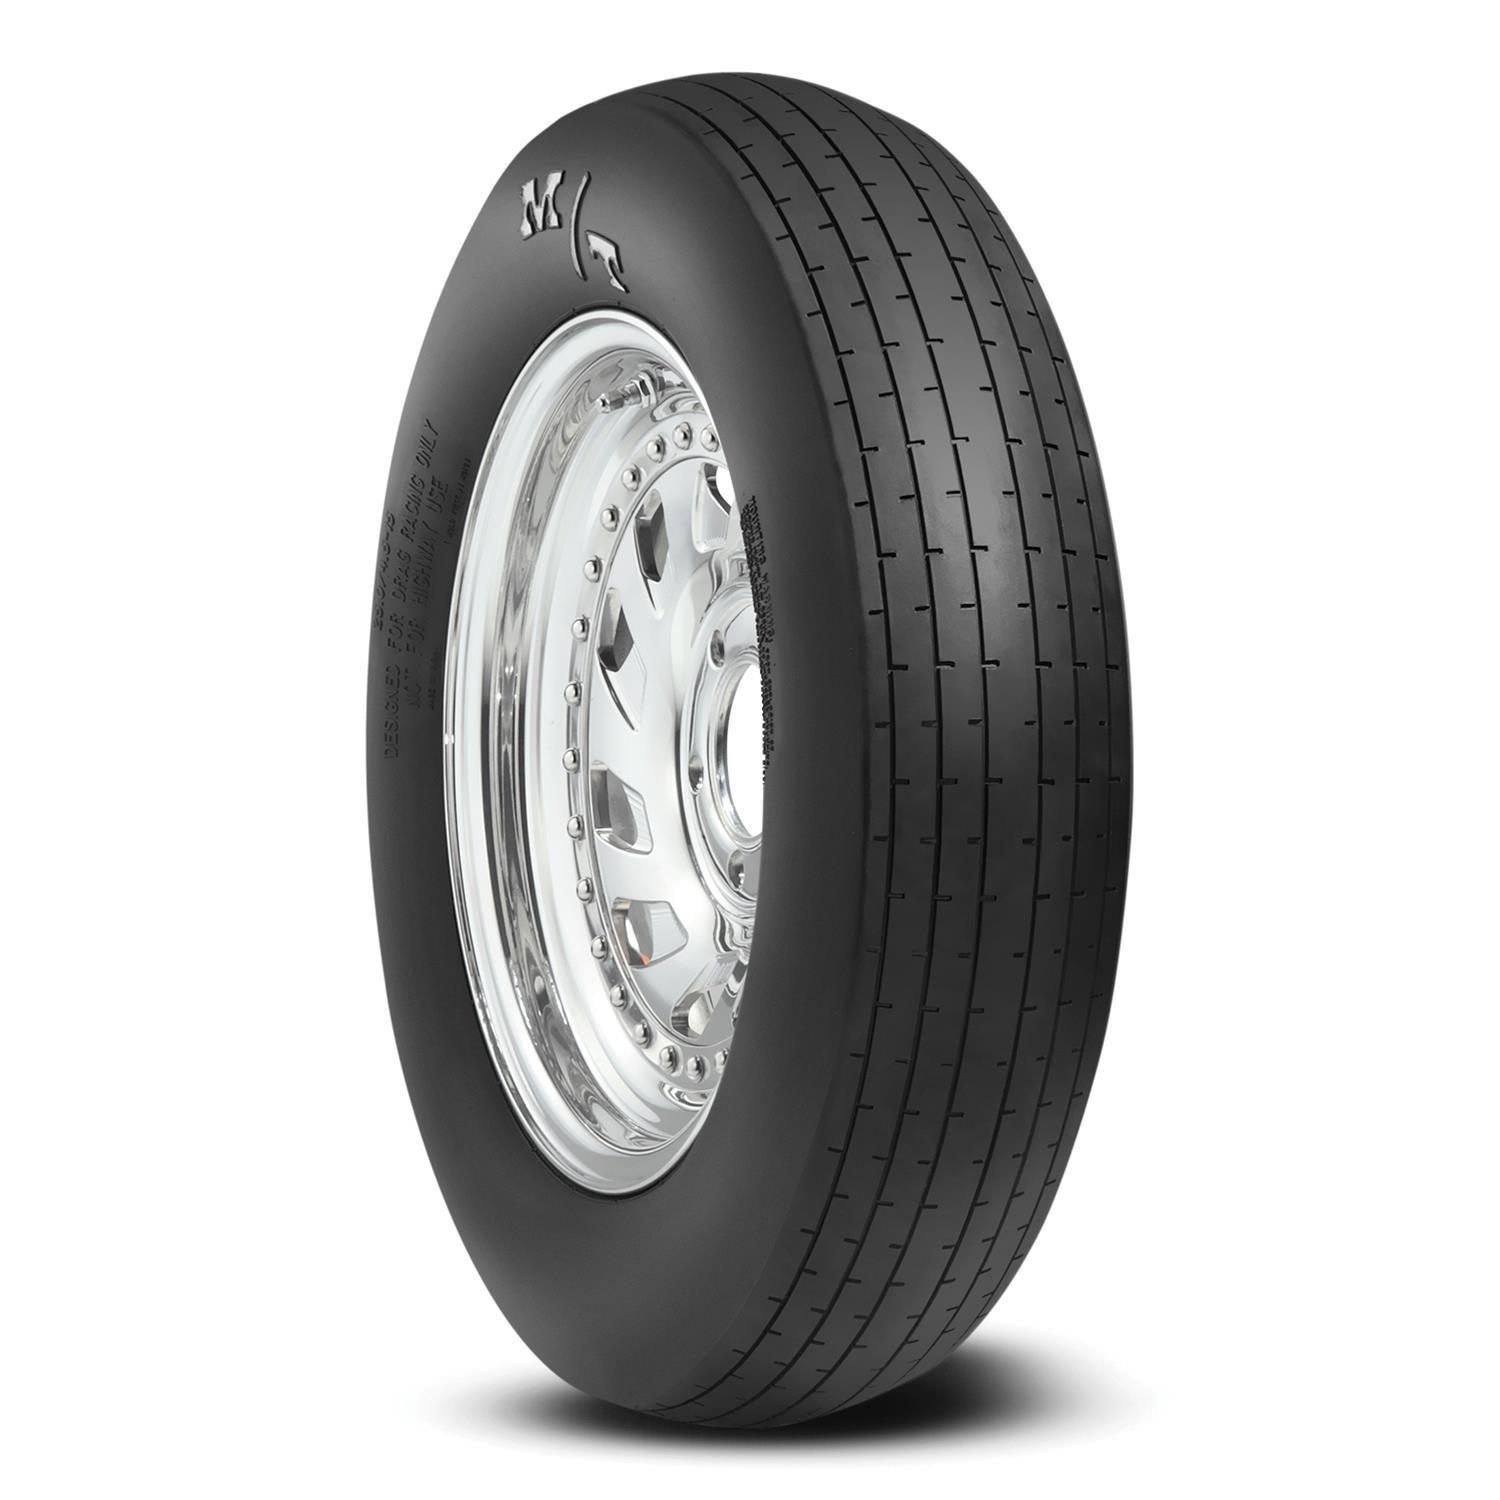 22.5x4.5-15 ET Drag Front Tire - Burlile Performance Products